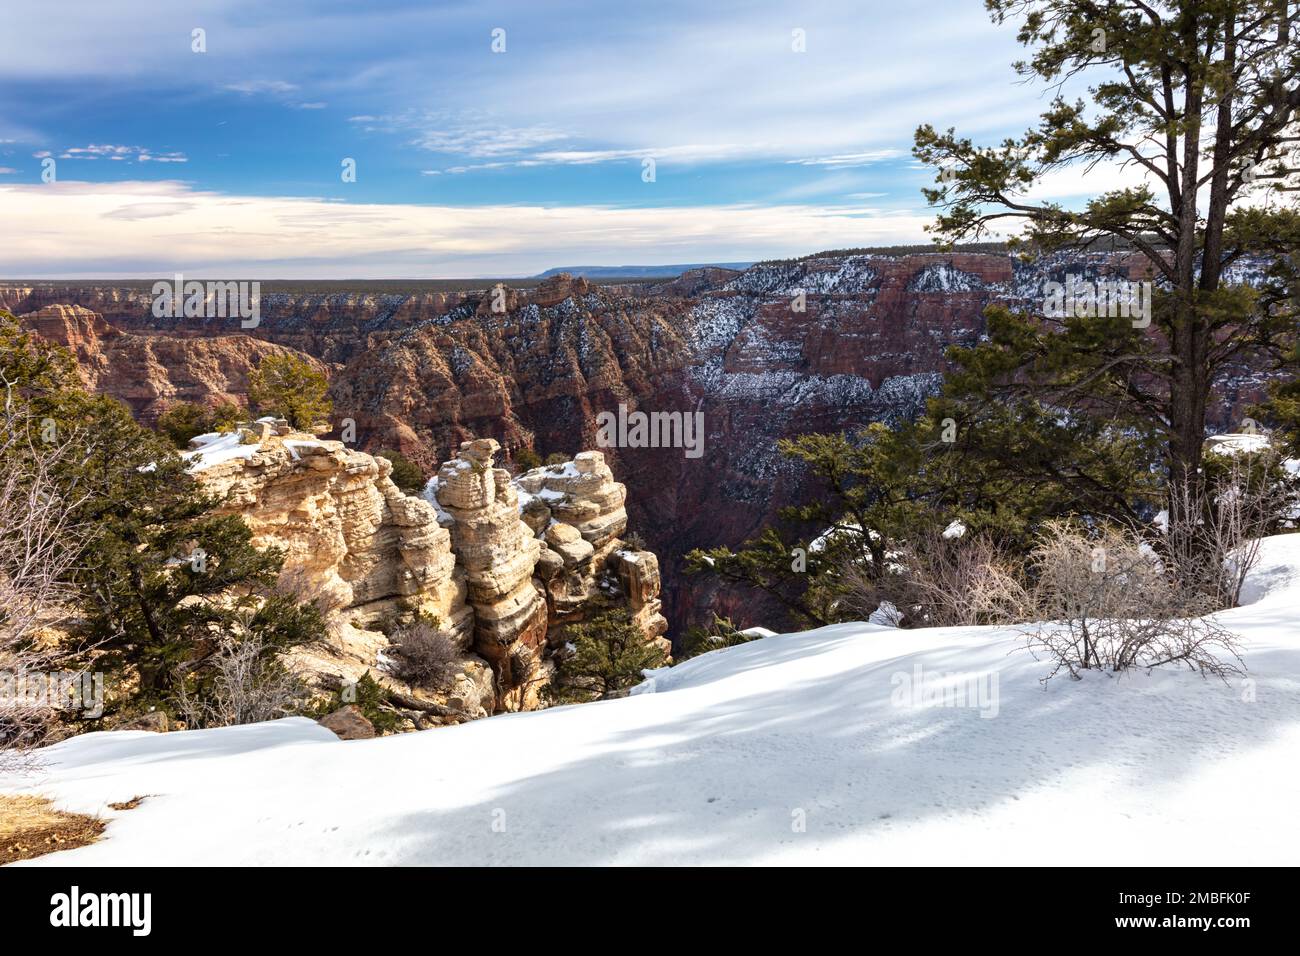 Vista sul Grand Canyon dopo una recente tempesta di neve. Neve bianca fresca stratificata in primo piano; Hoodoos e parete del canyon spolverato bianco sullo sfondo. Foto Stock